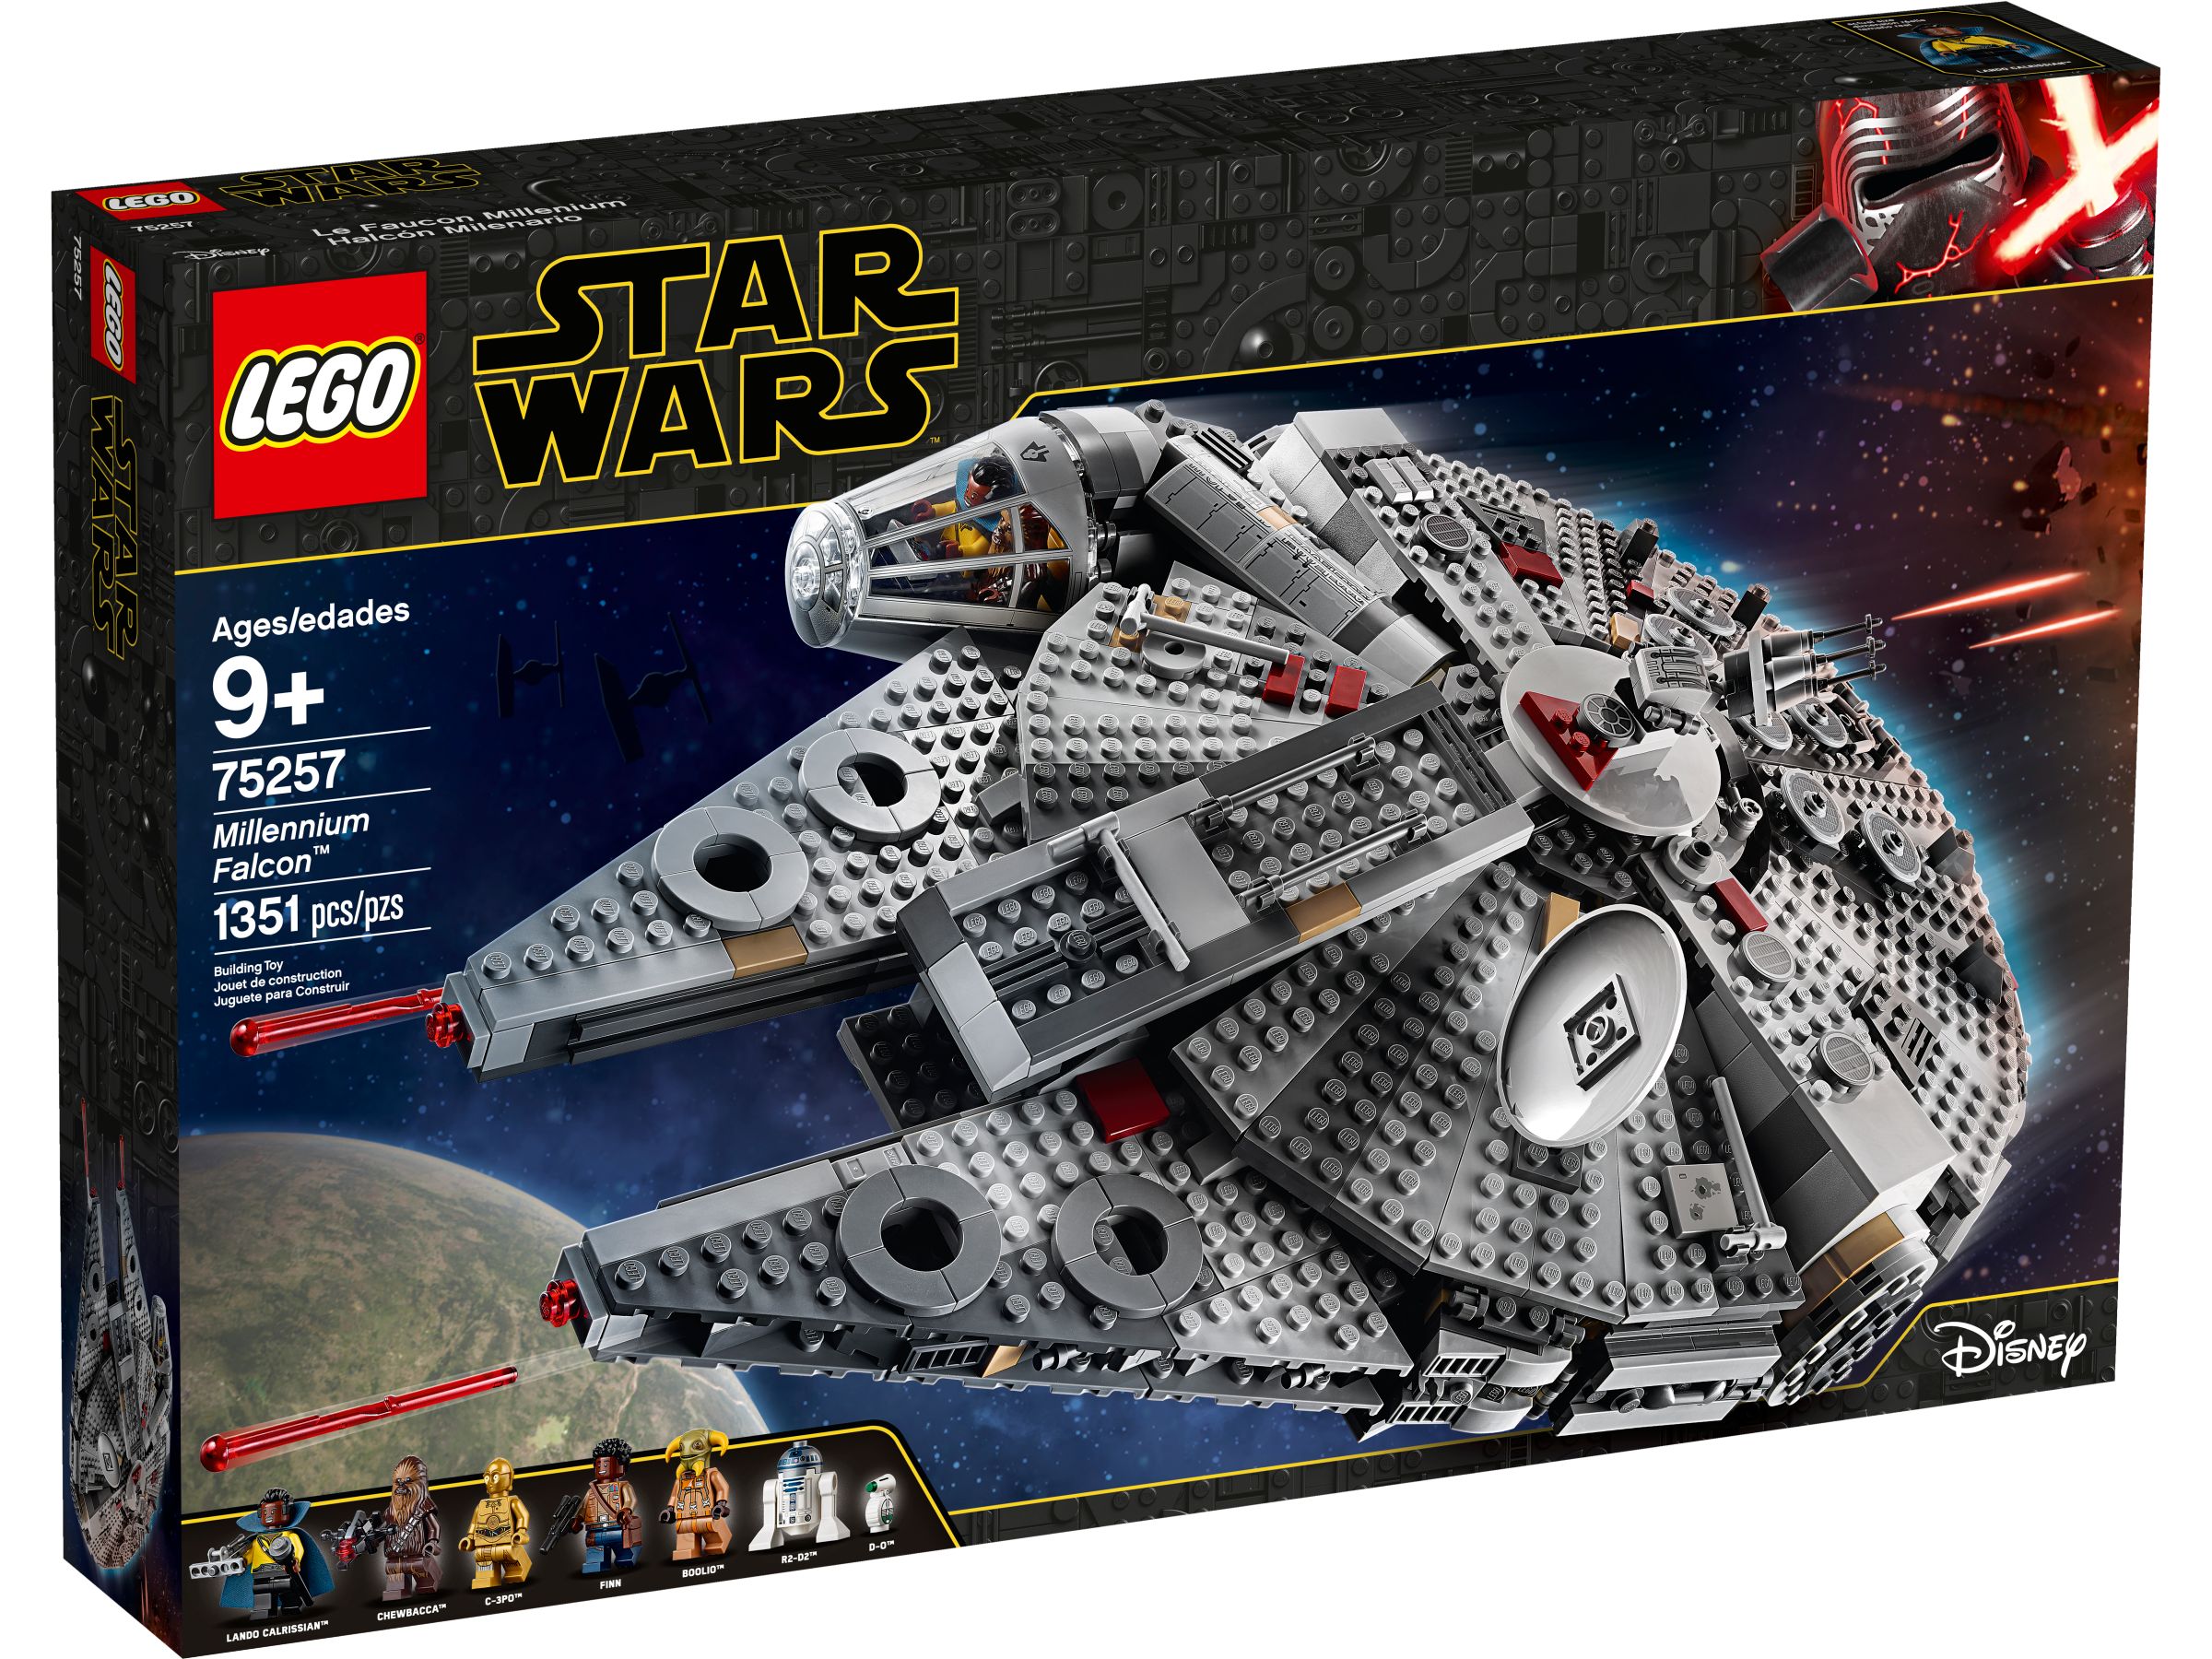 LEGO Star Wars 75257 Millennium Falcon™ LEGO_75257_alt1.jpg